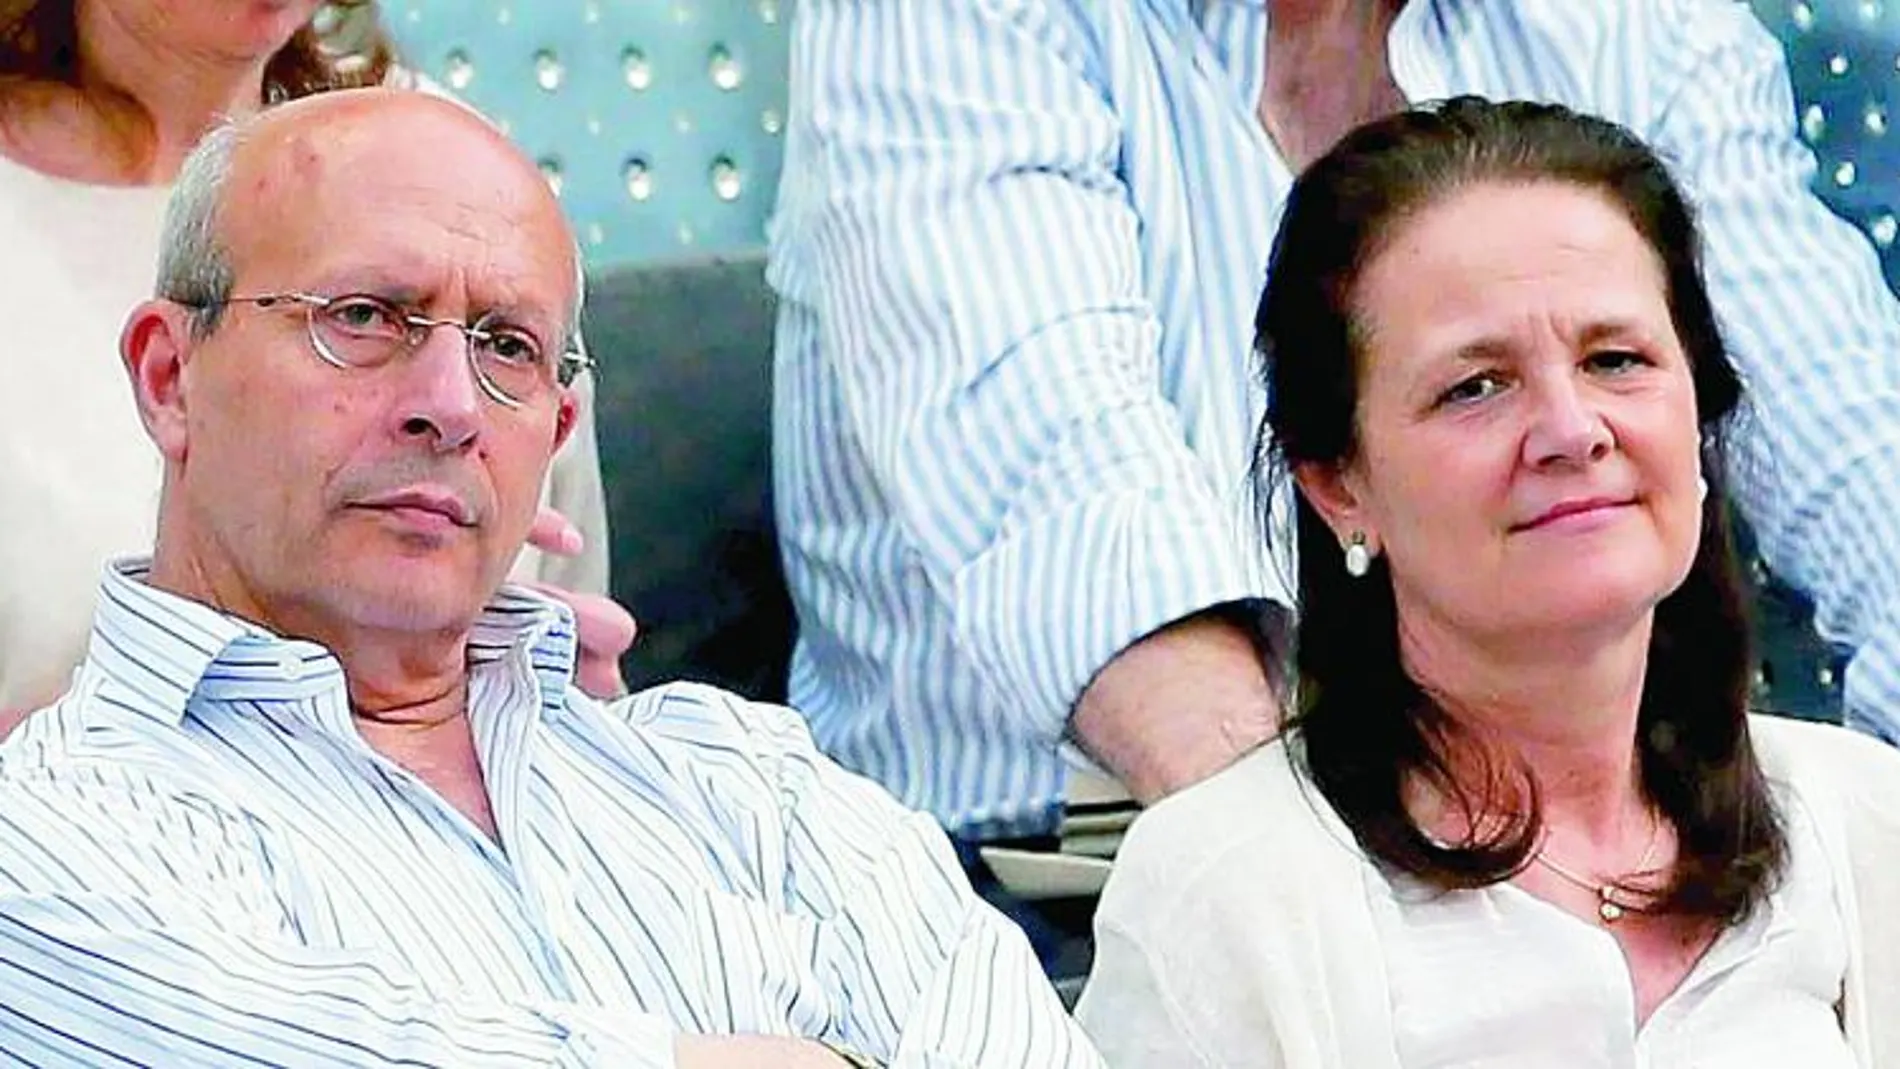 La pareja, que nunca se ha escondido en los actos públicos, lo que ha sido criticado, durante un partido de tenis en la Caja Mágica de Madrid